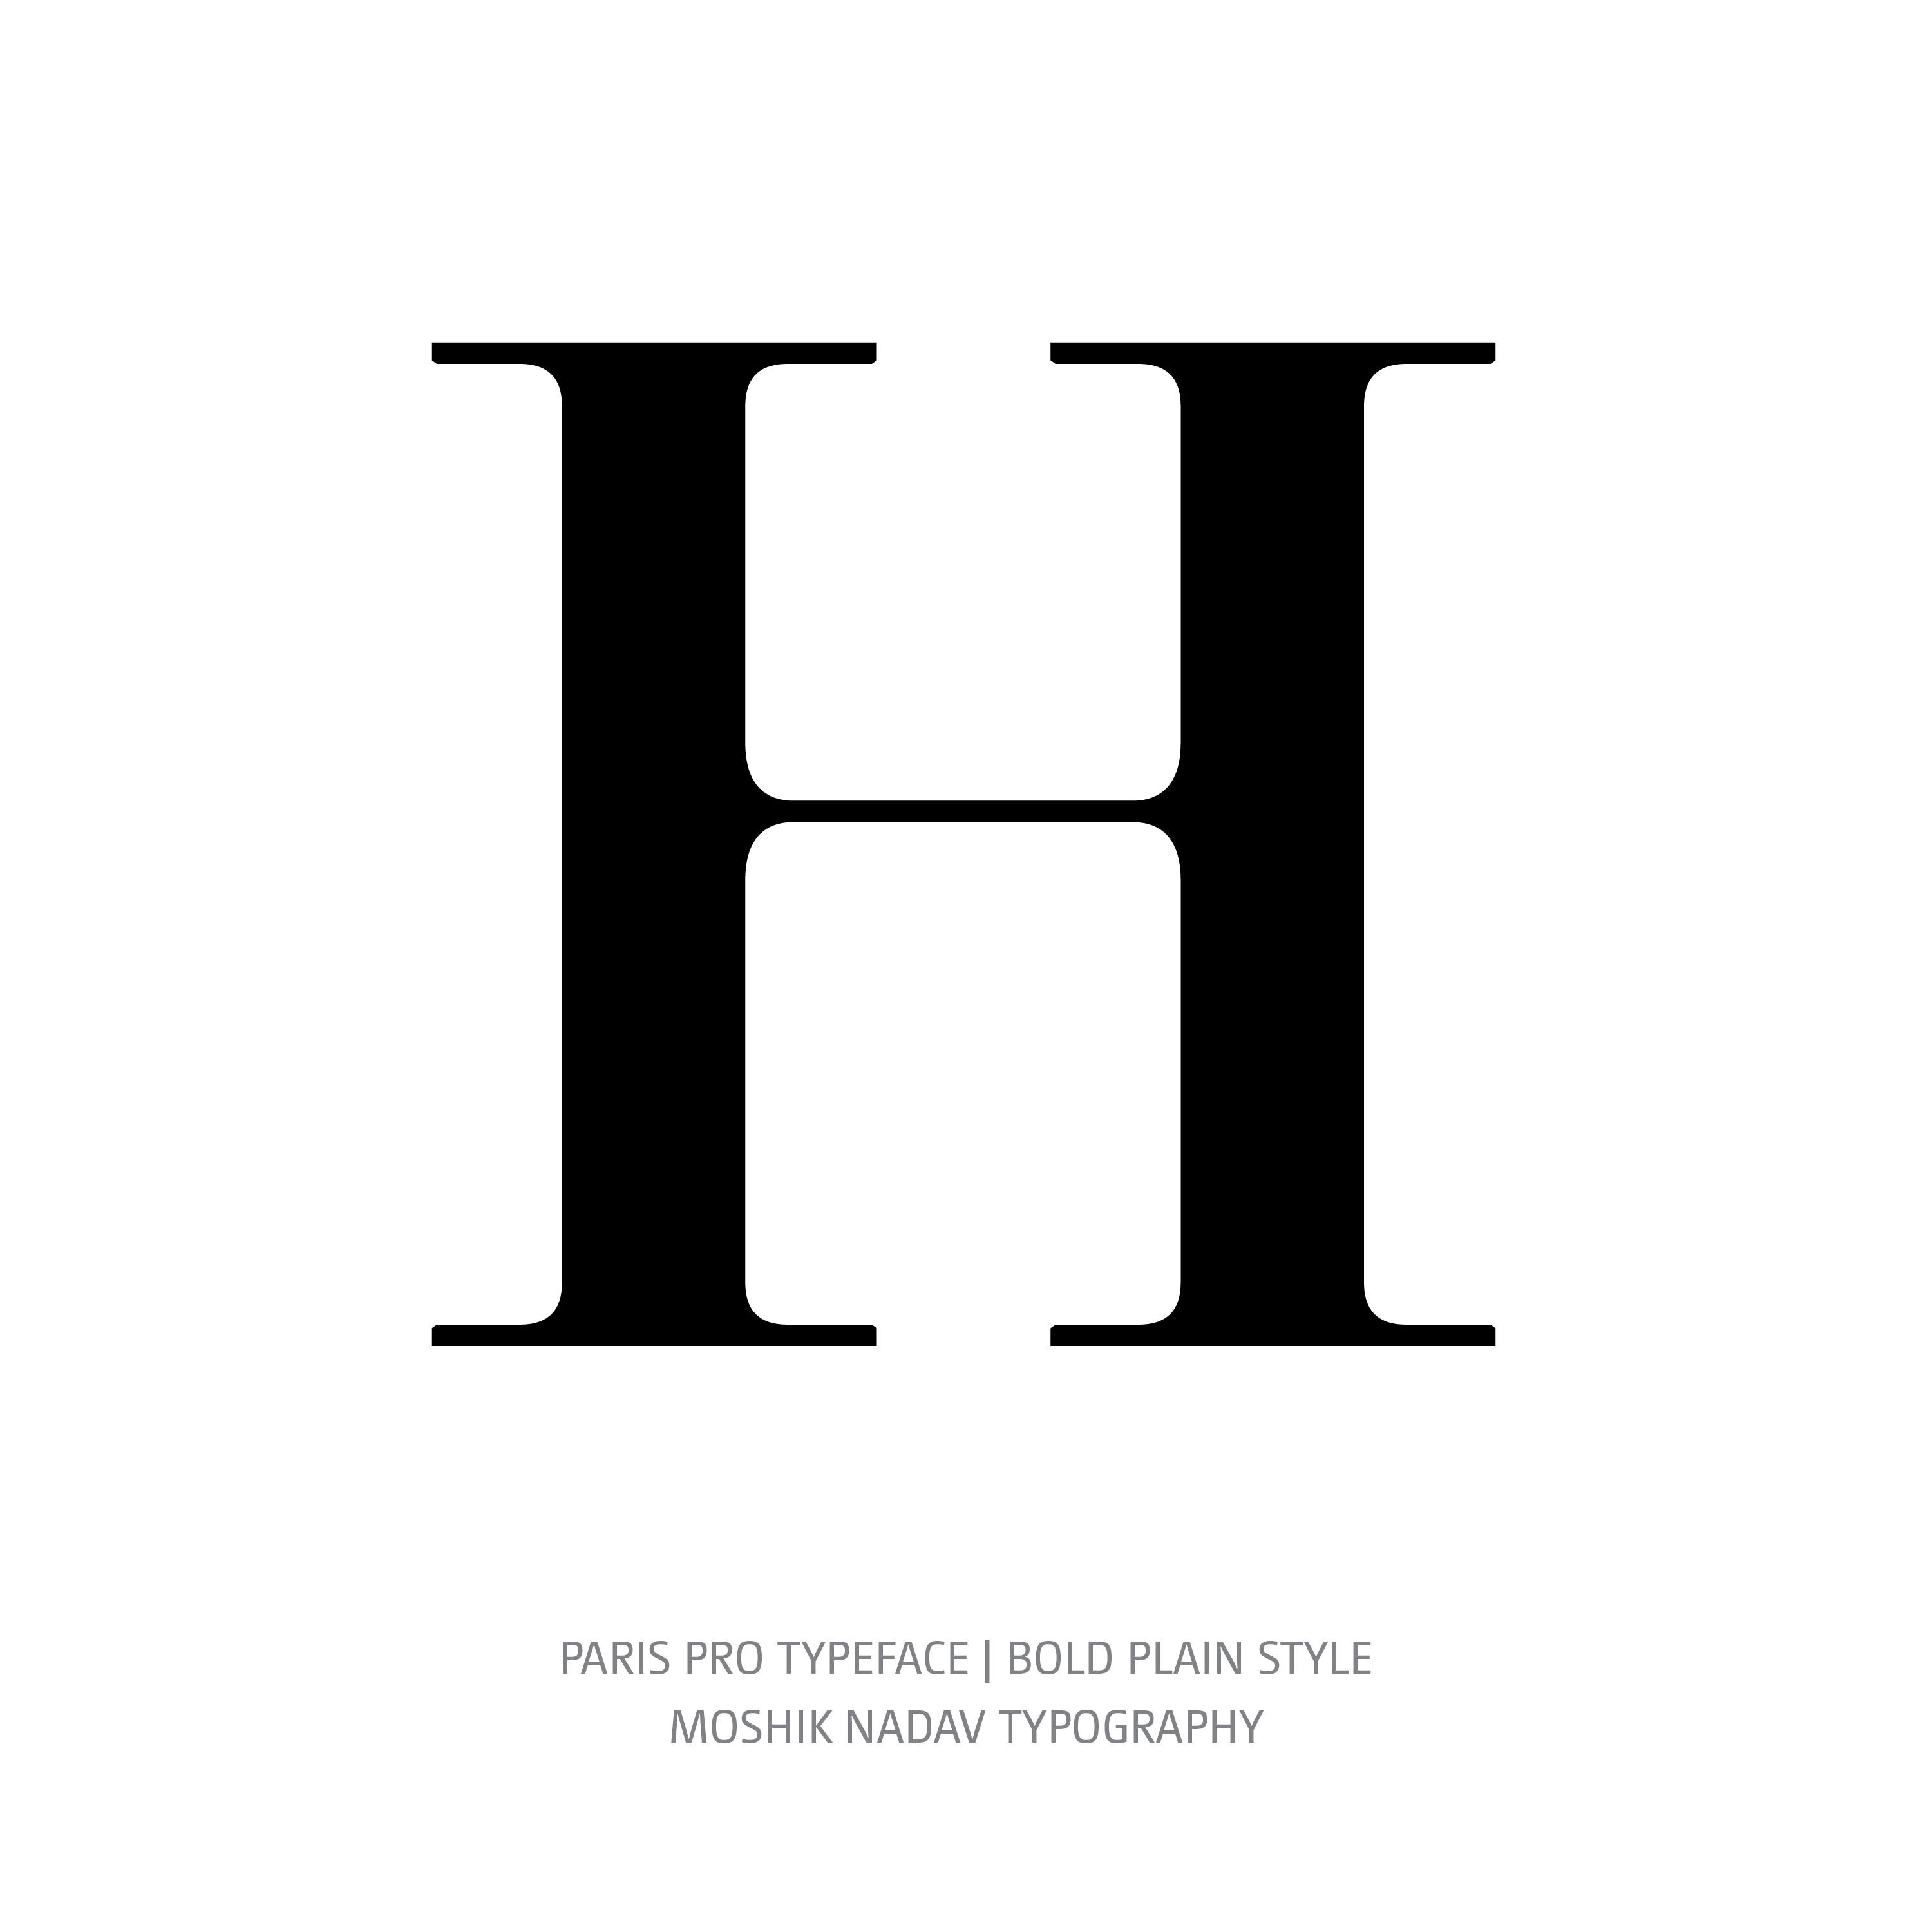 Paris Pro Typeface Bold Plain H